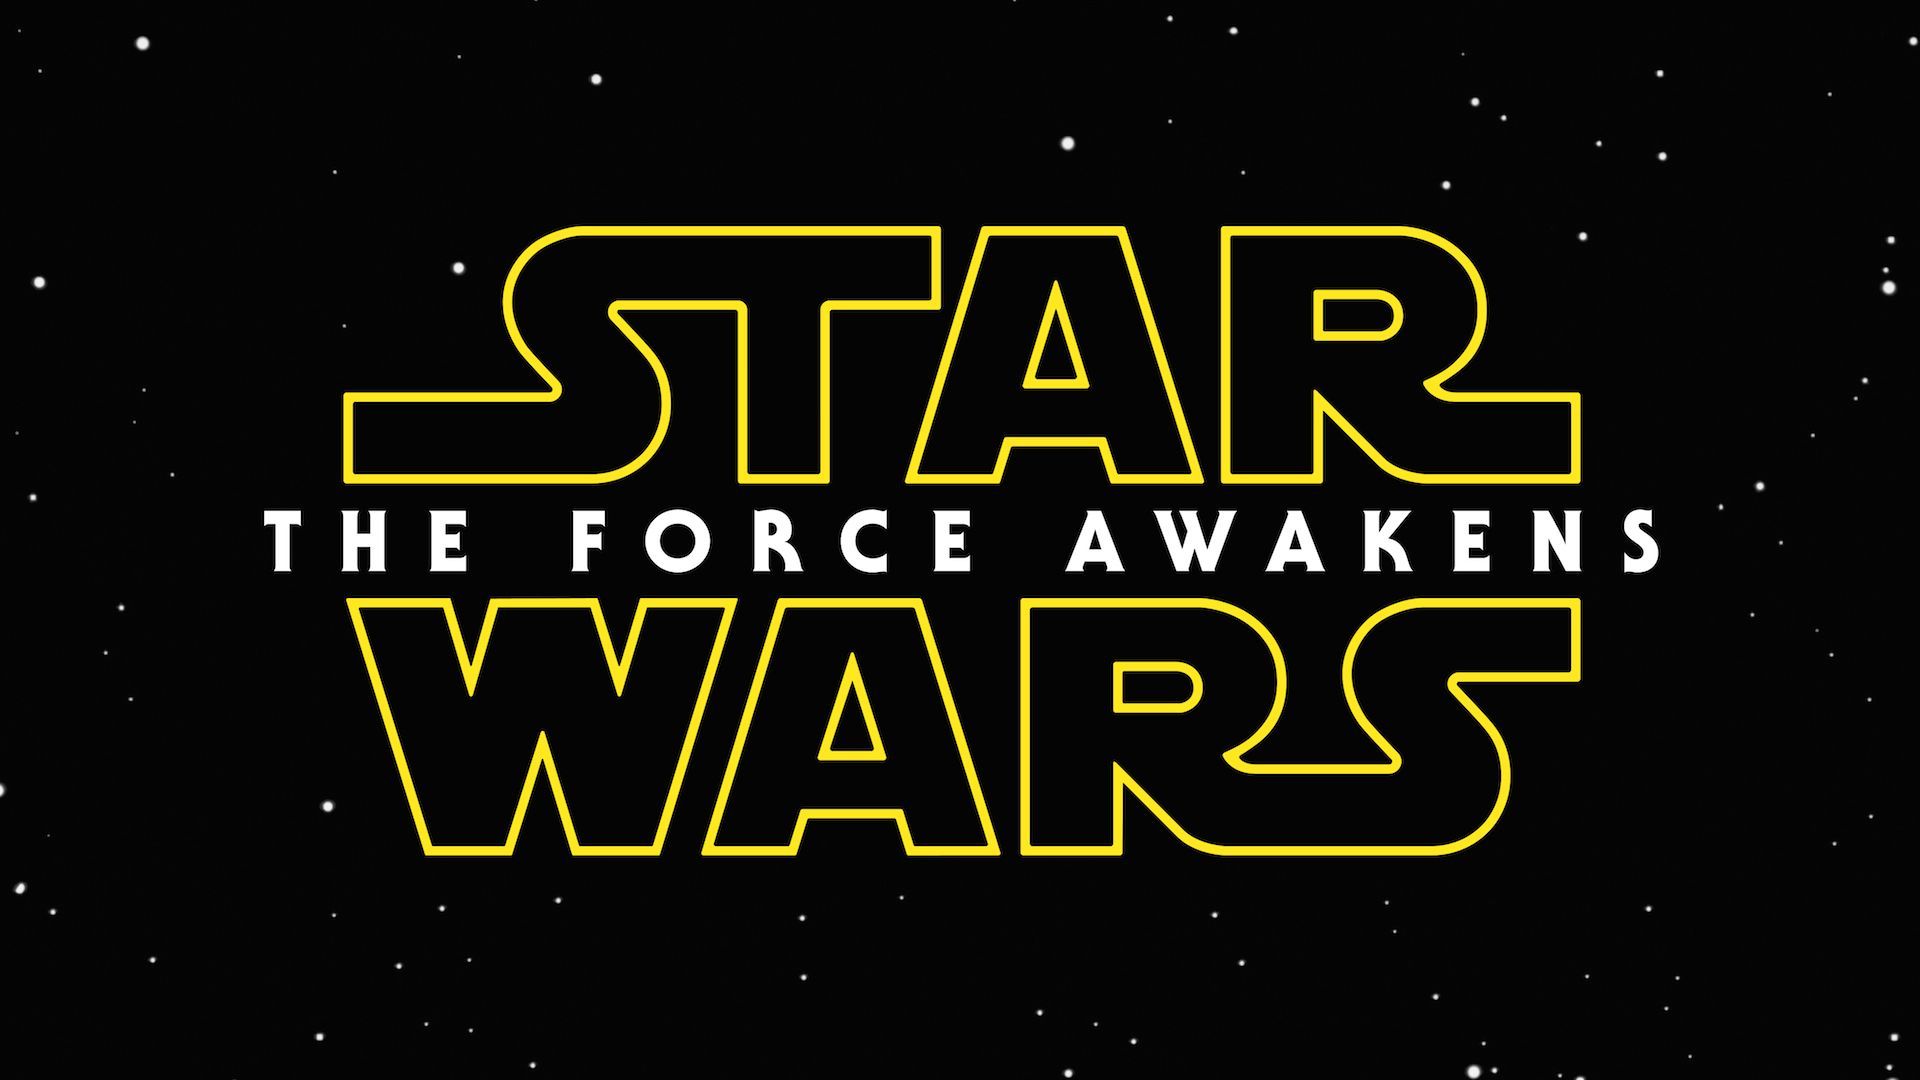 Star Wars The Force Awakens HD Wallpaper 1920x1080 ID52767